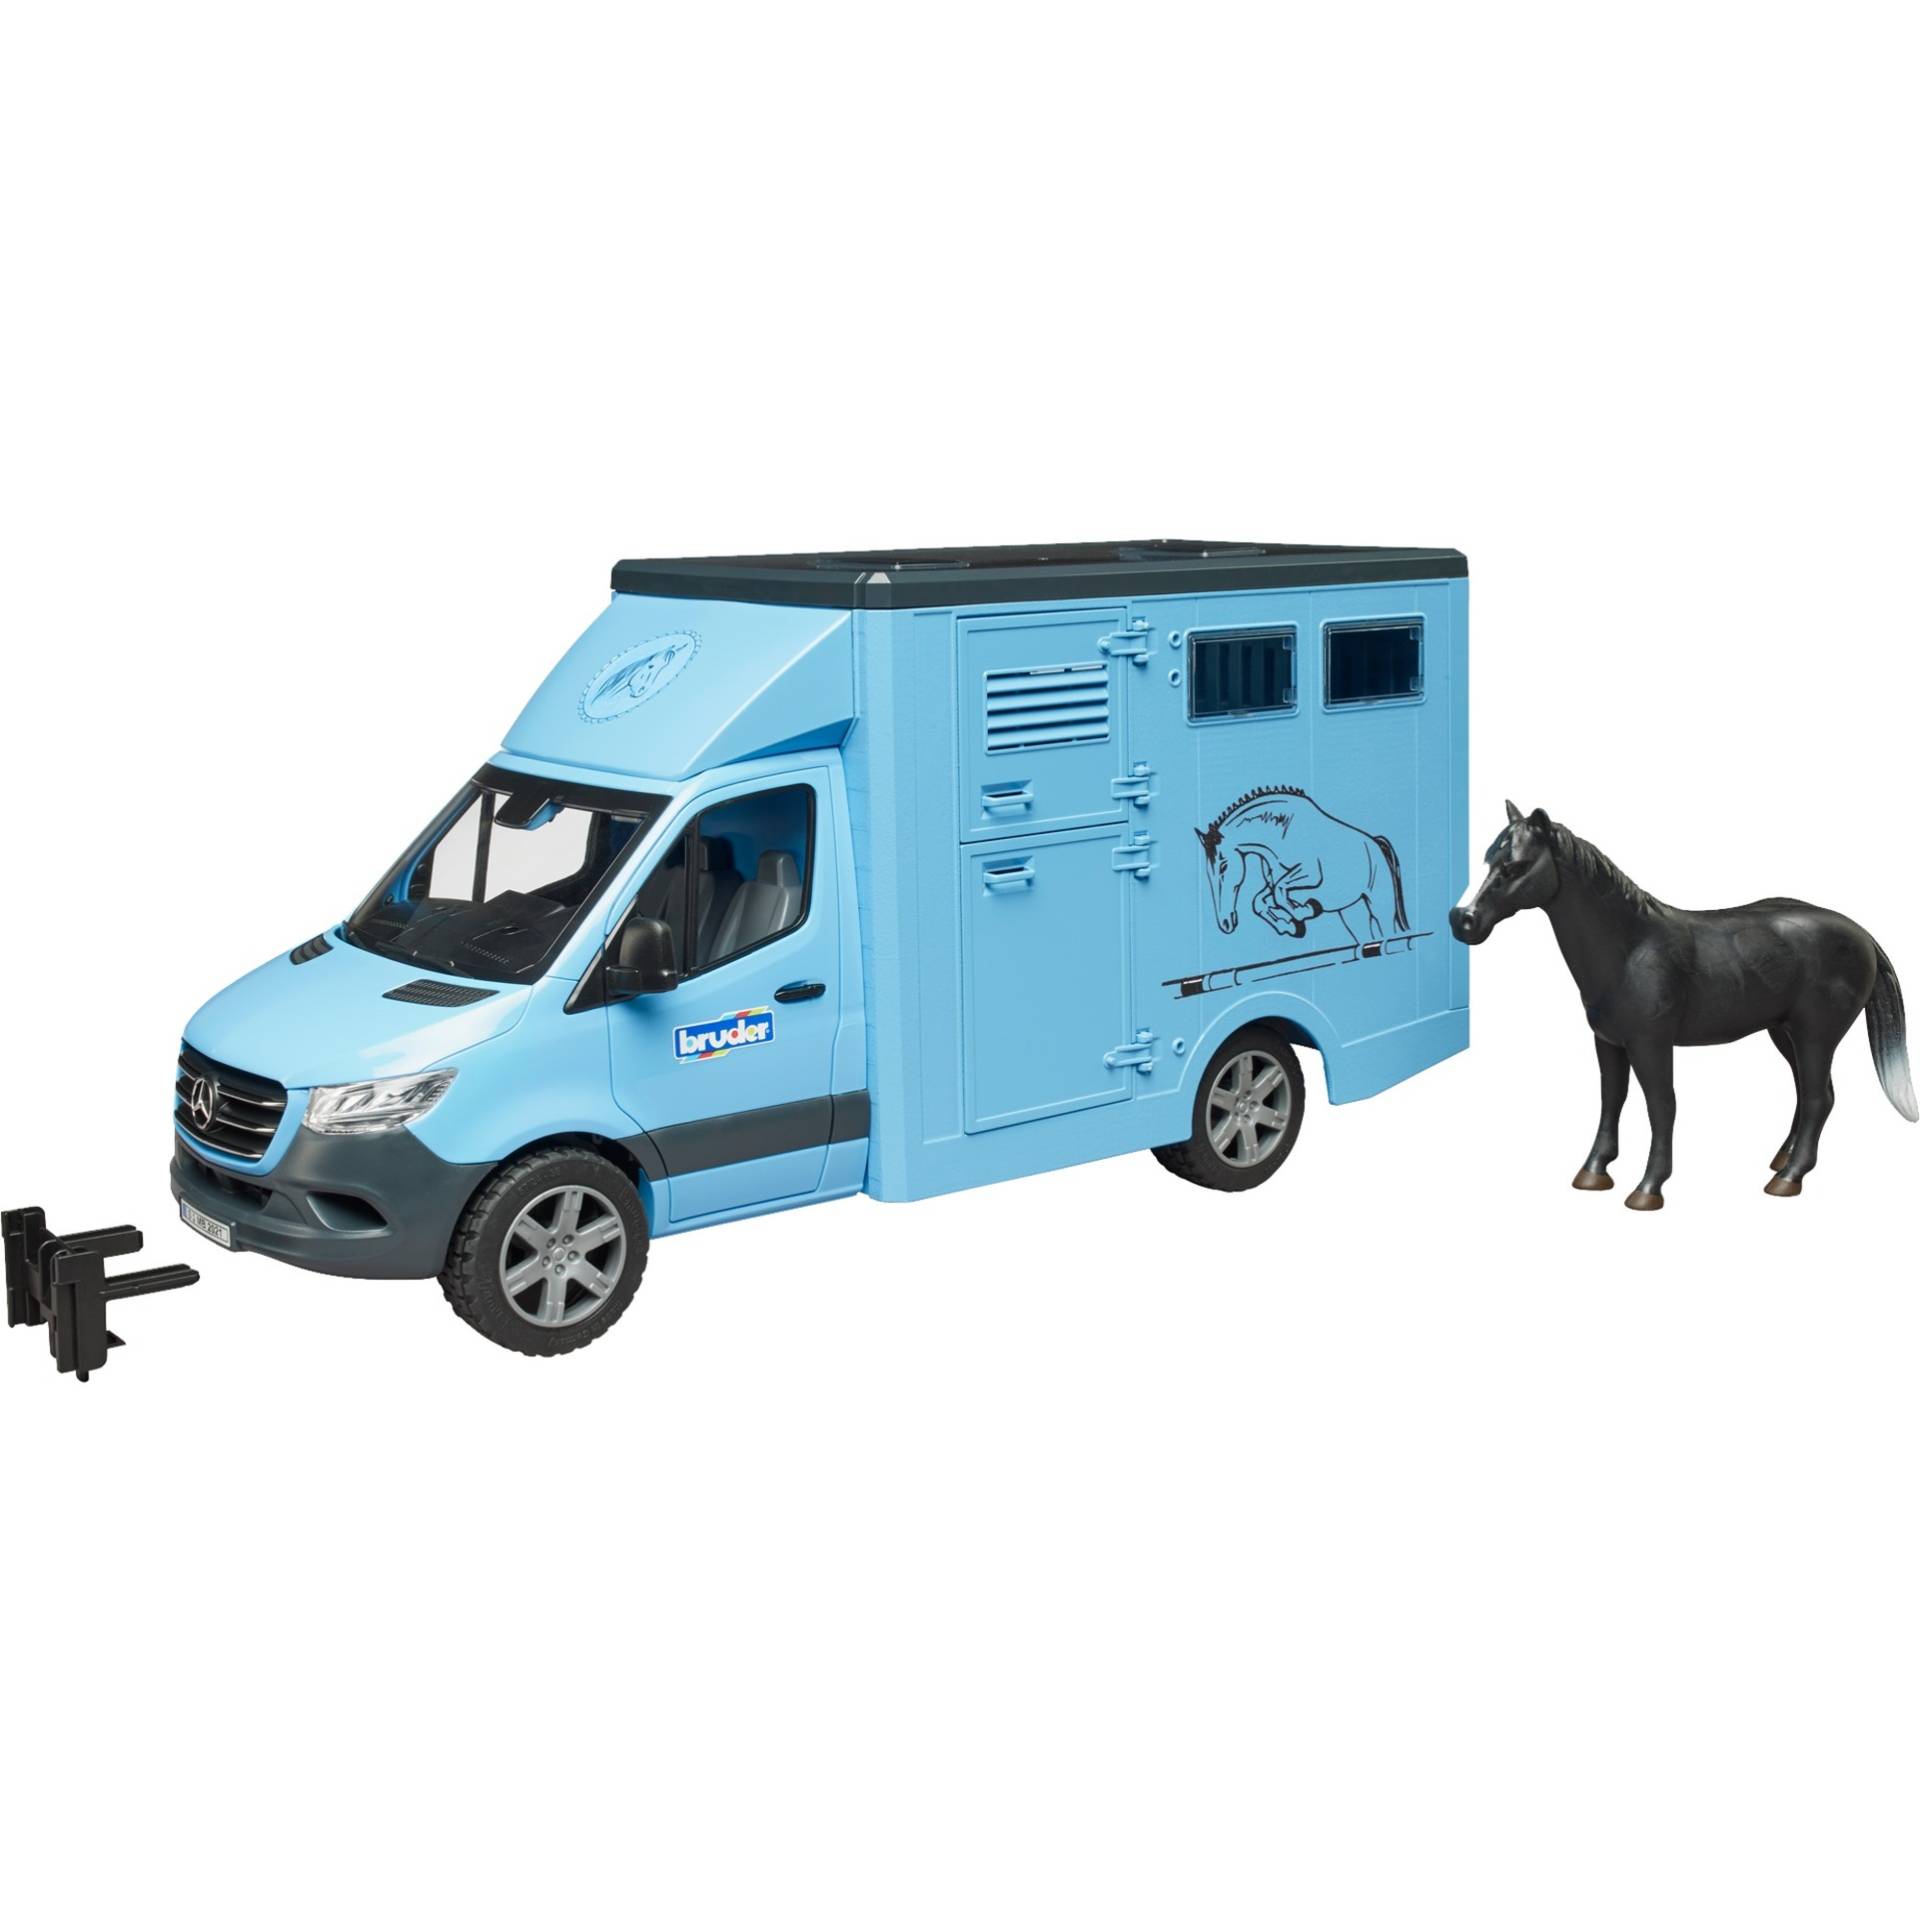 MB Sprinter Tiertransporter mit Pferd, Modellfahrzeug von Bruder